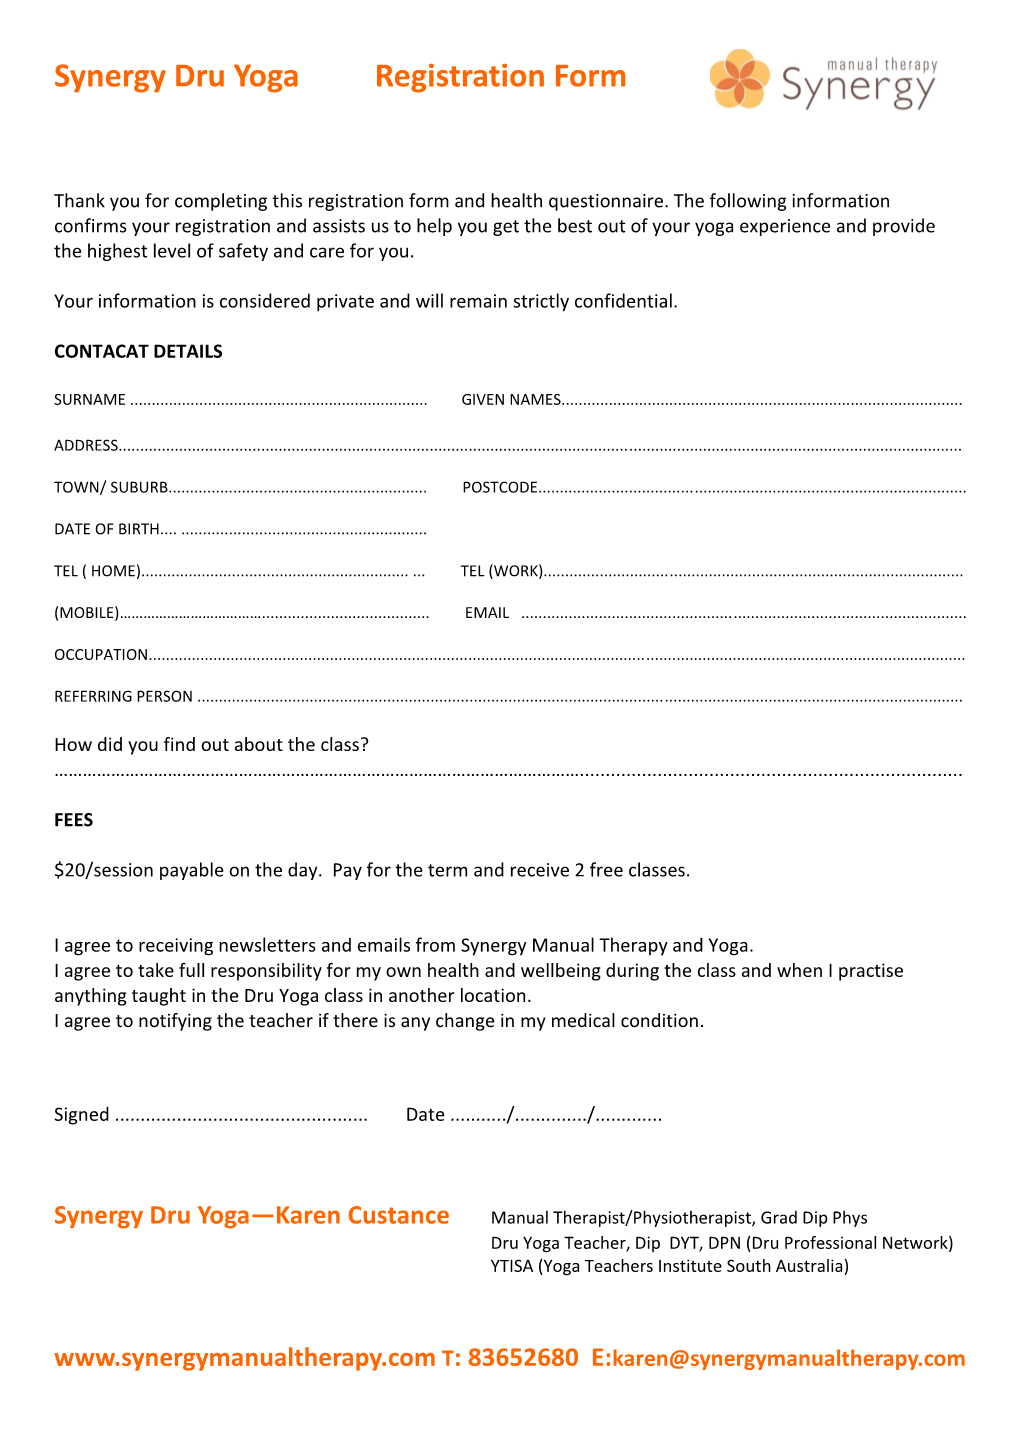 Synergy Dru Yoga Registration Form